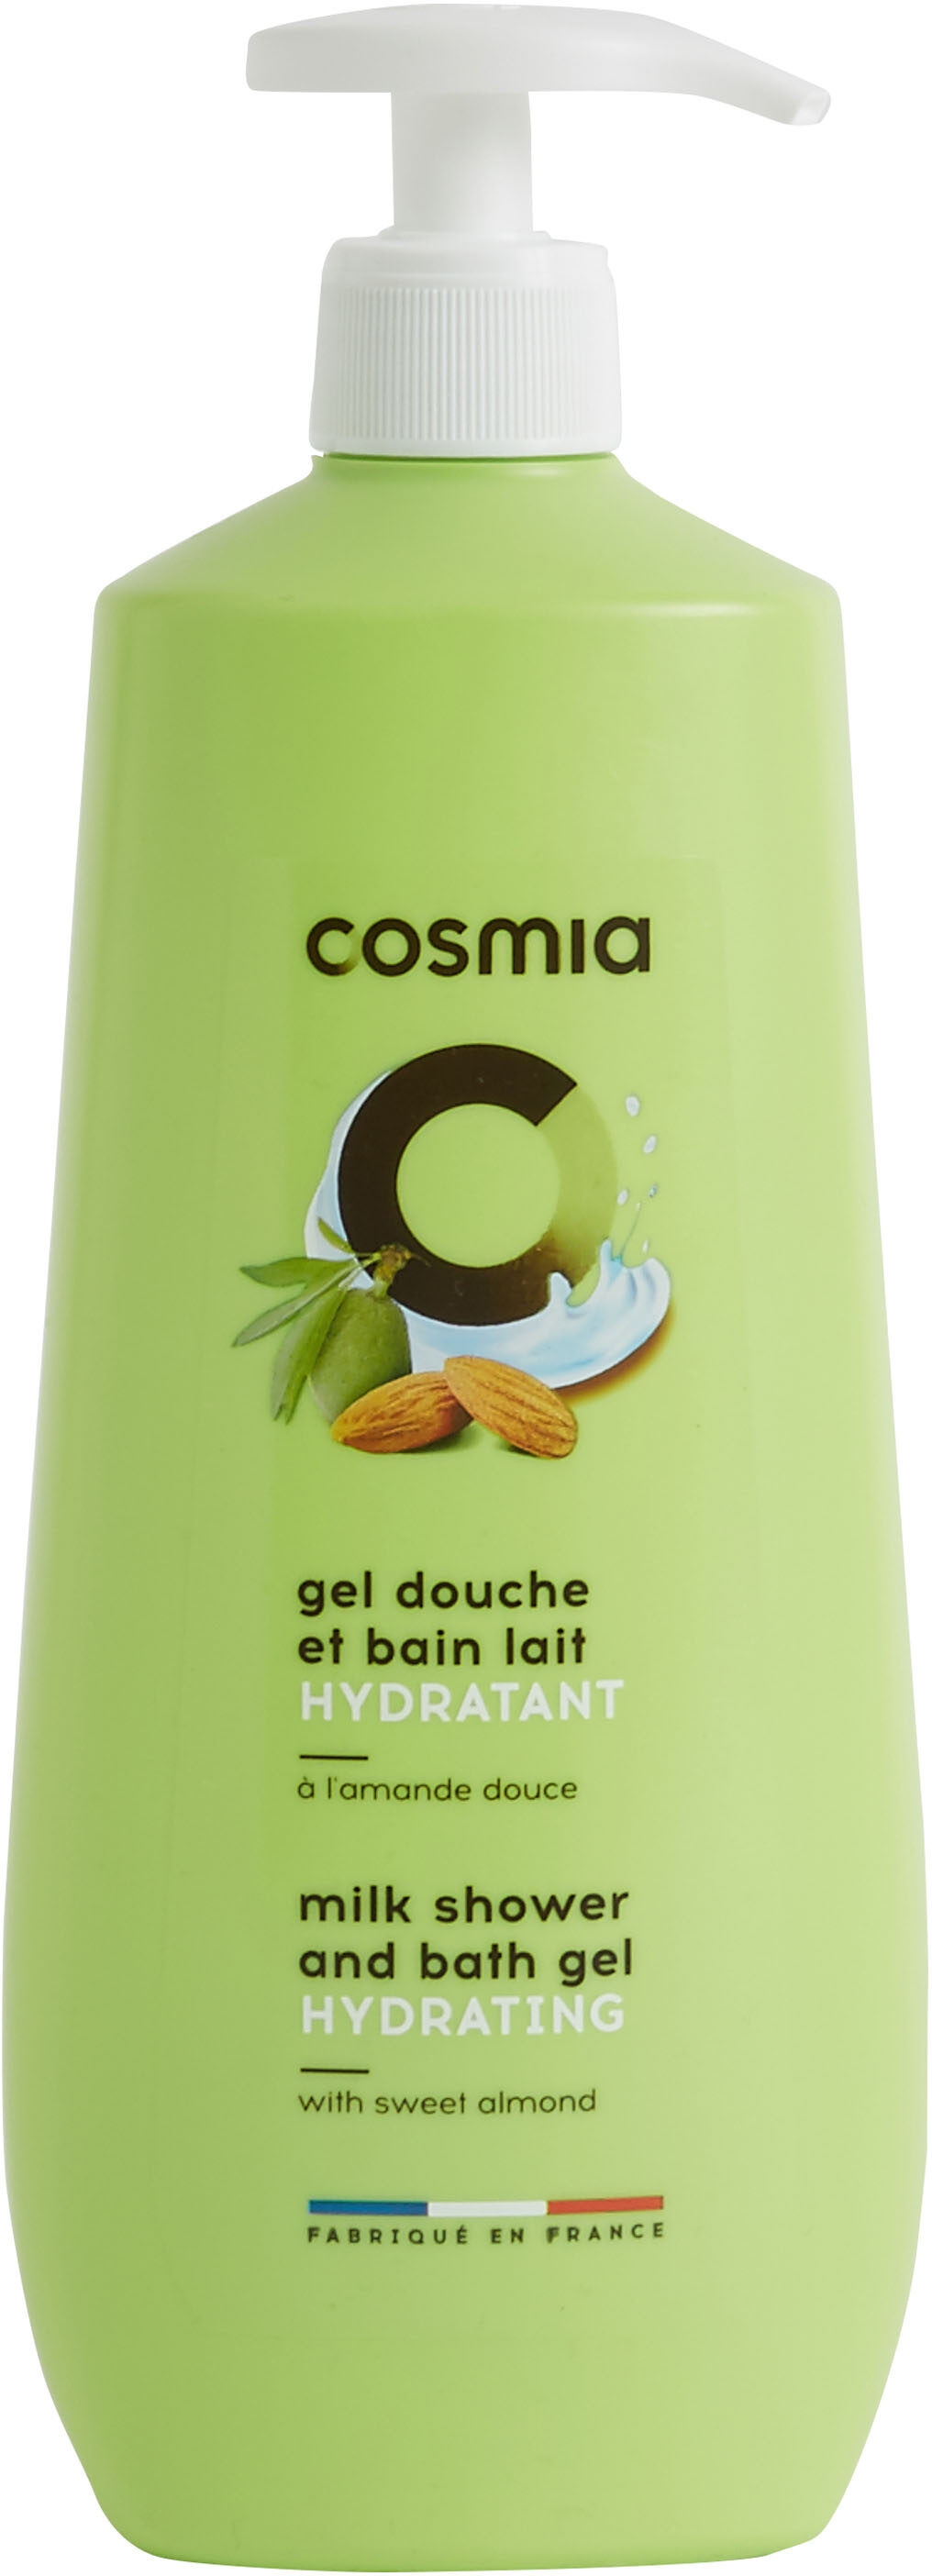 Cosmia gel douche et bain lait hydratant a l'amande douce - Product - en